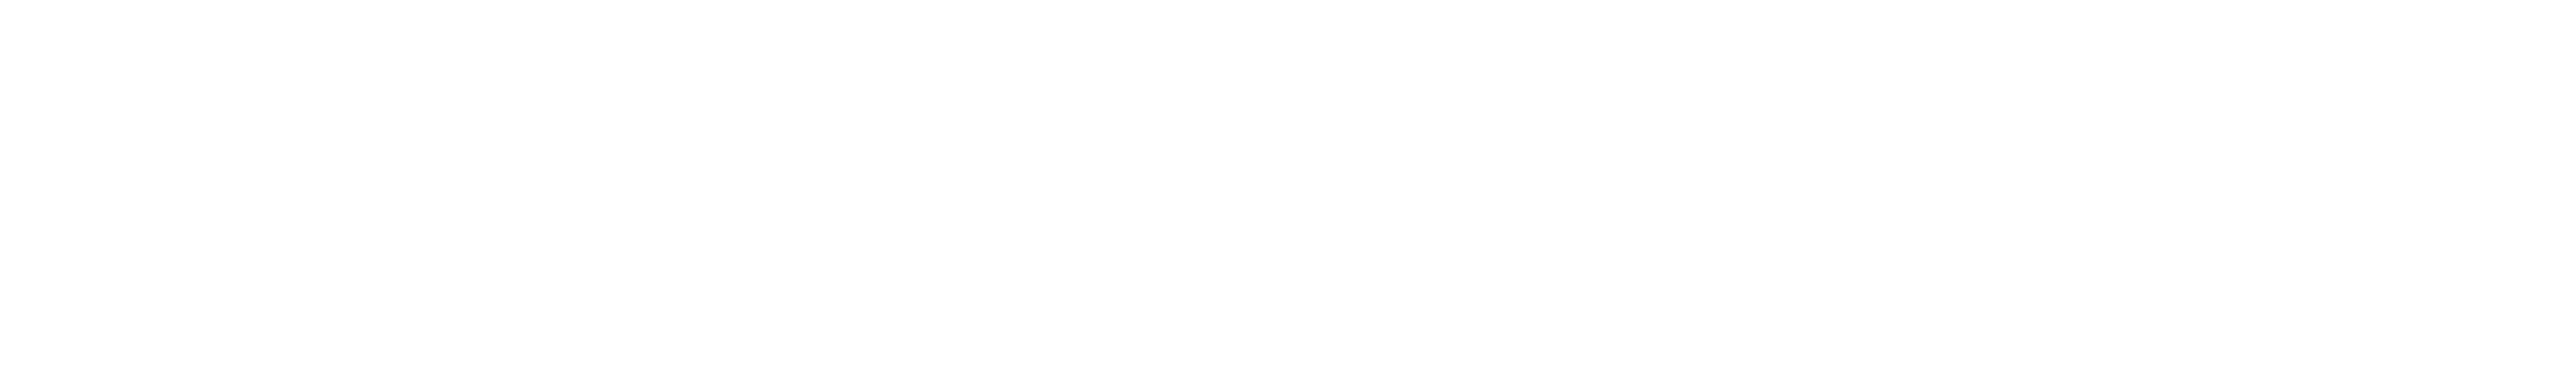 100% Carbon, 0% Bullsh*t